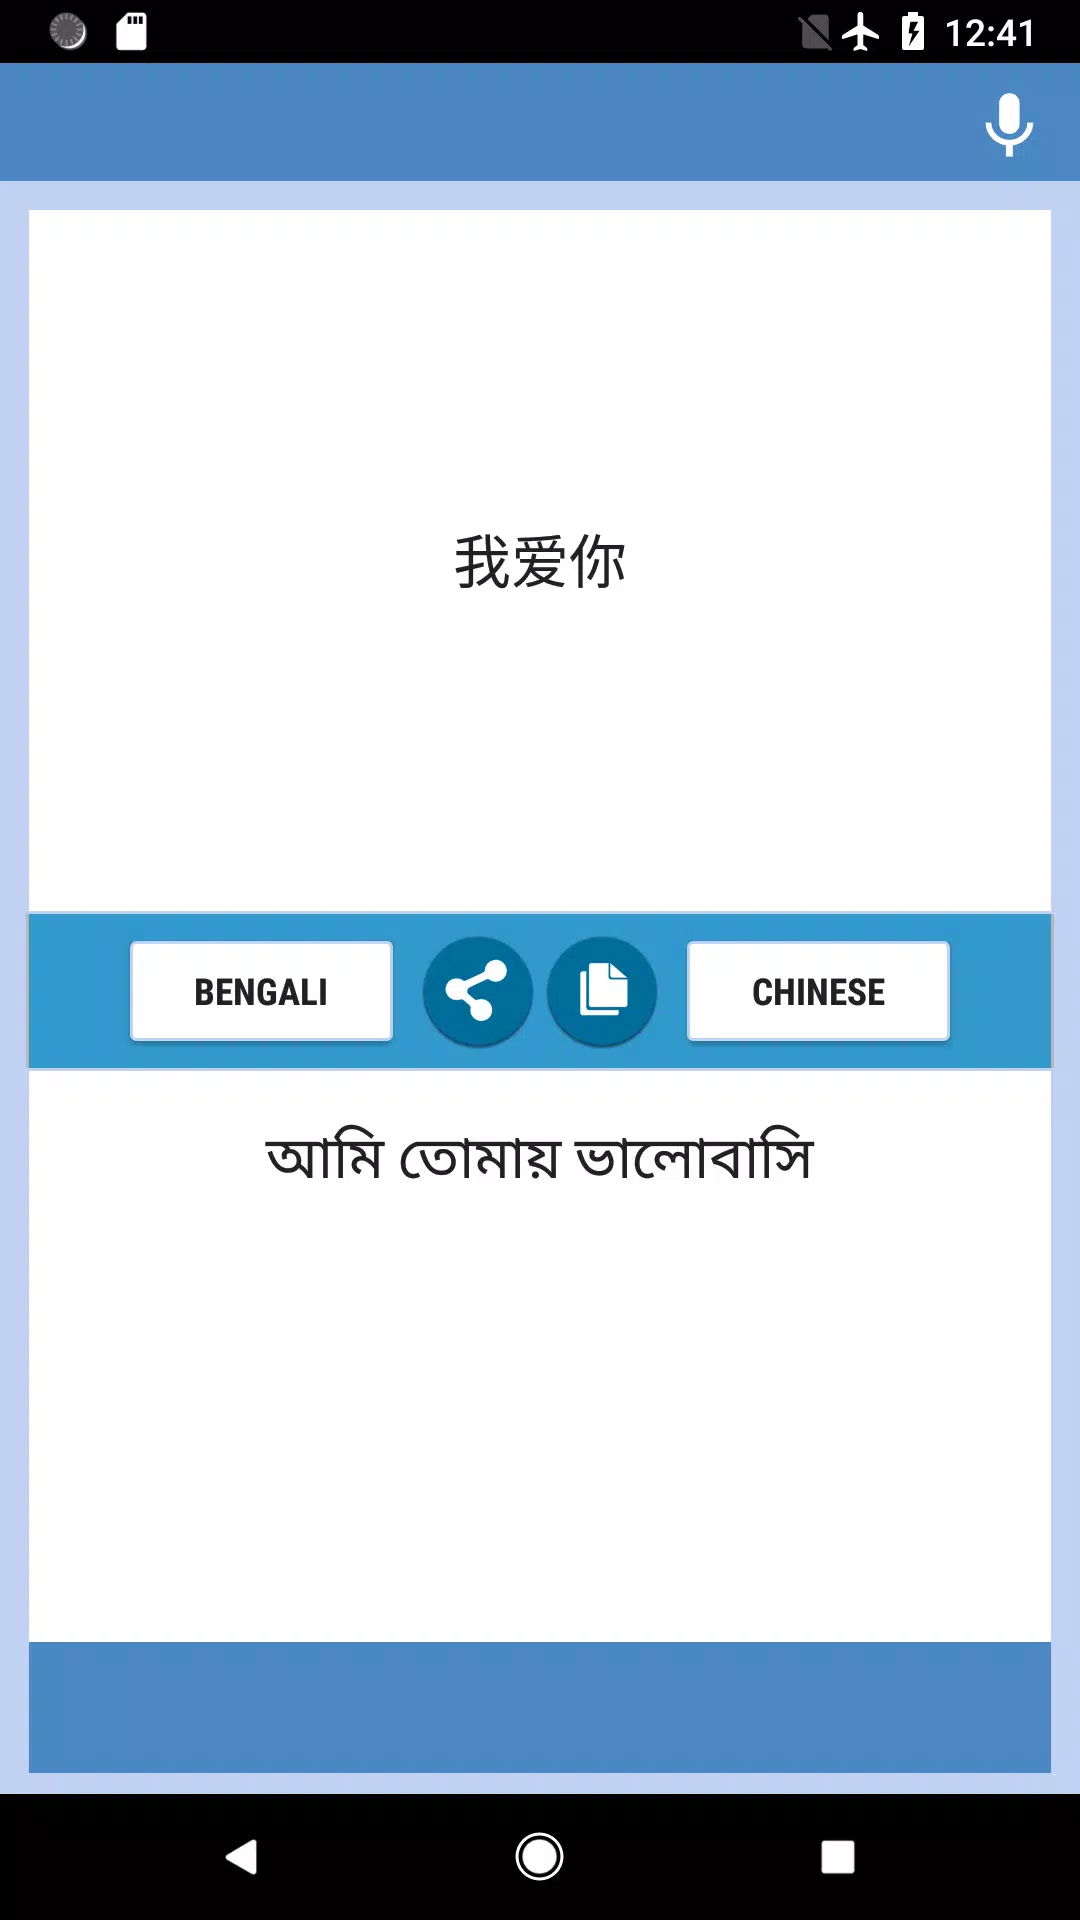 孟加拉 的 翻译 语 孟加拉语英文_孟加拉语英语怎么说_翻译